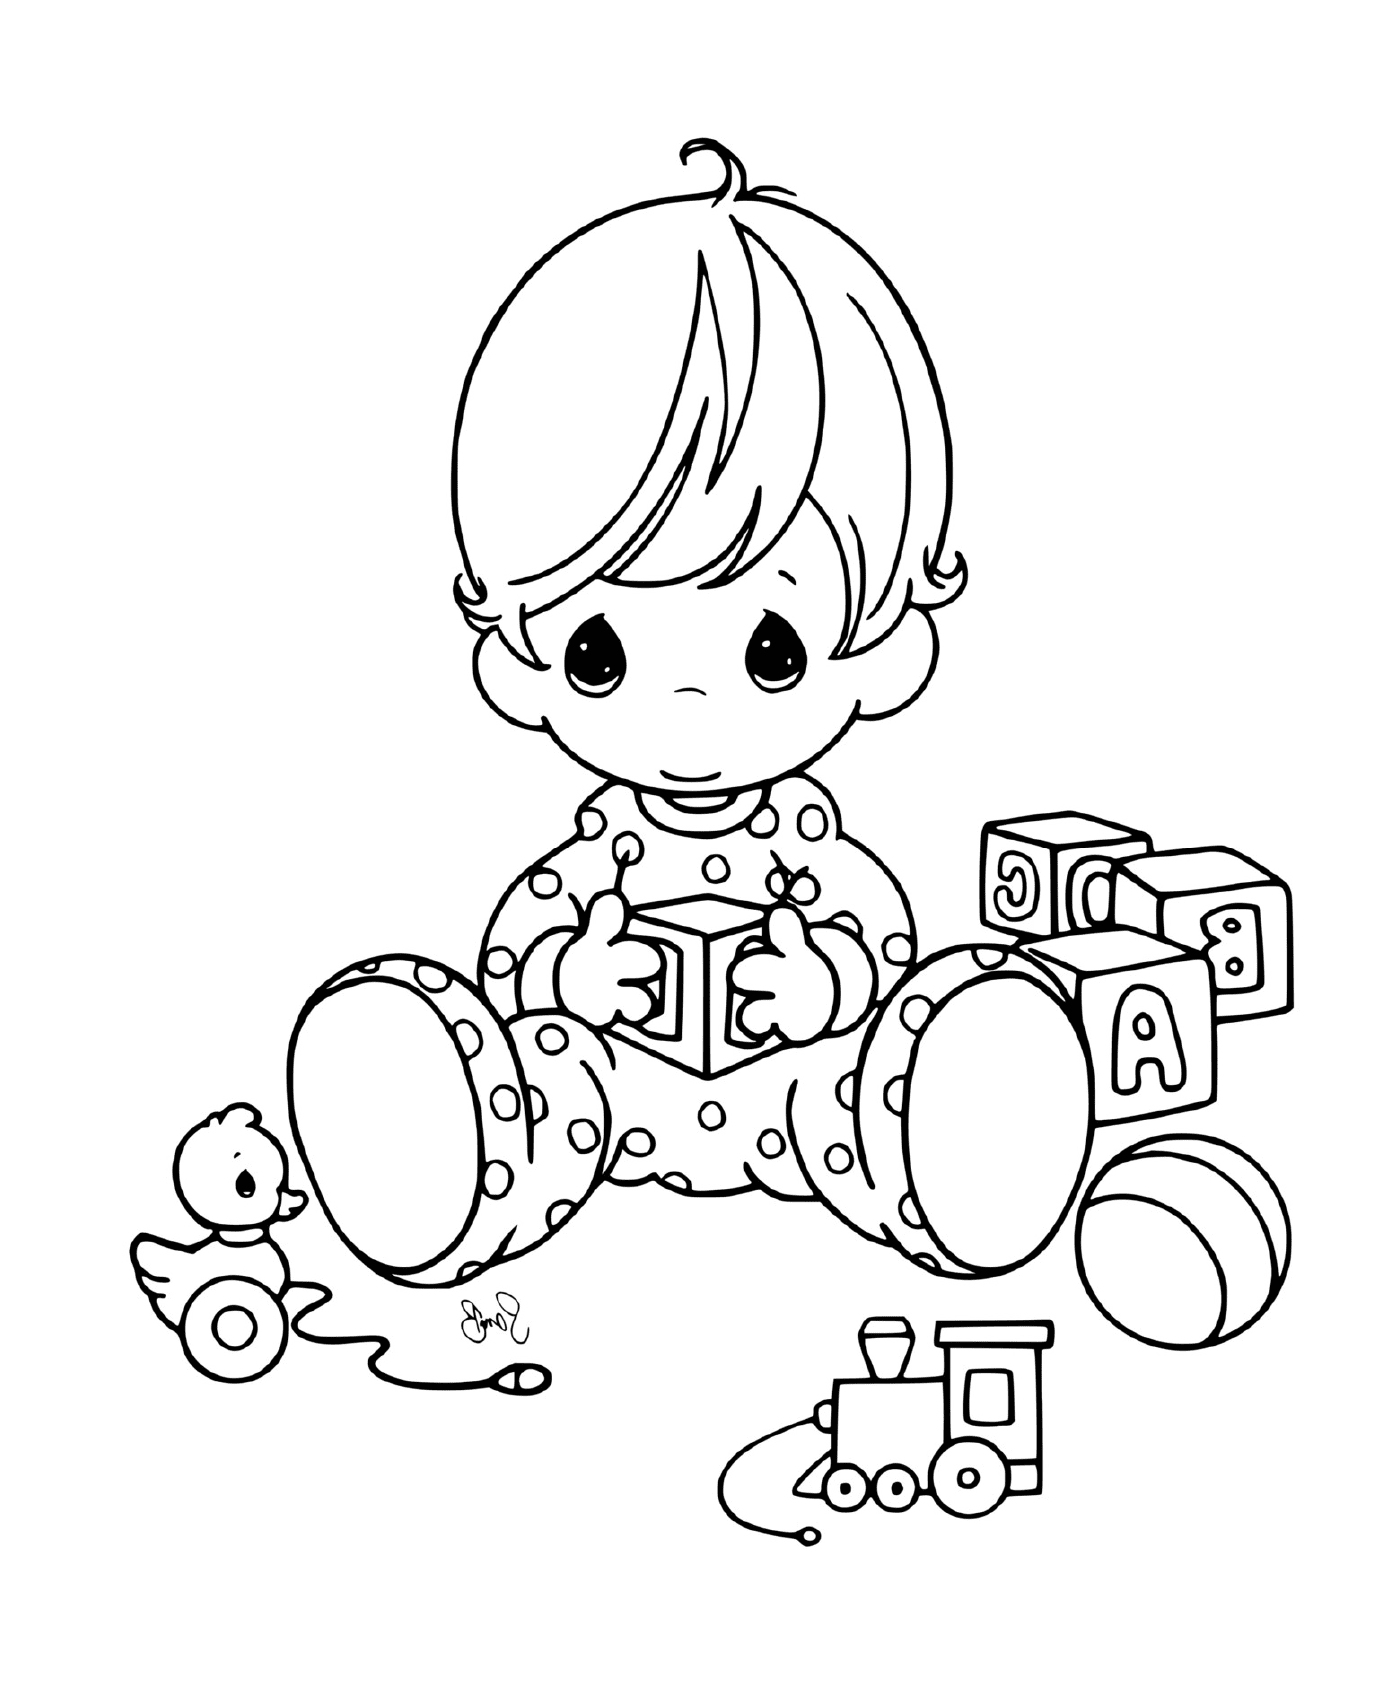  एक बच्चा अपने खिलौने के साथ 